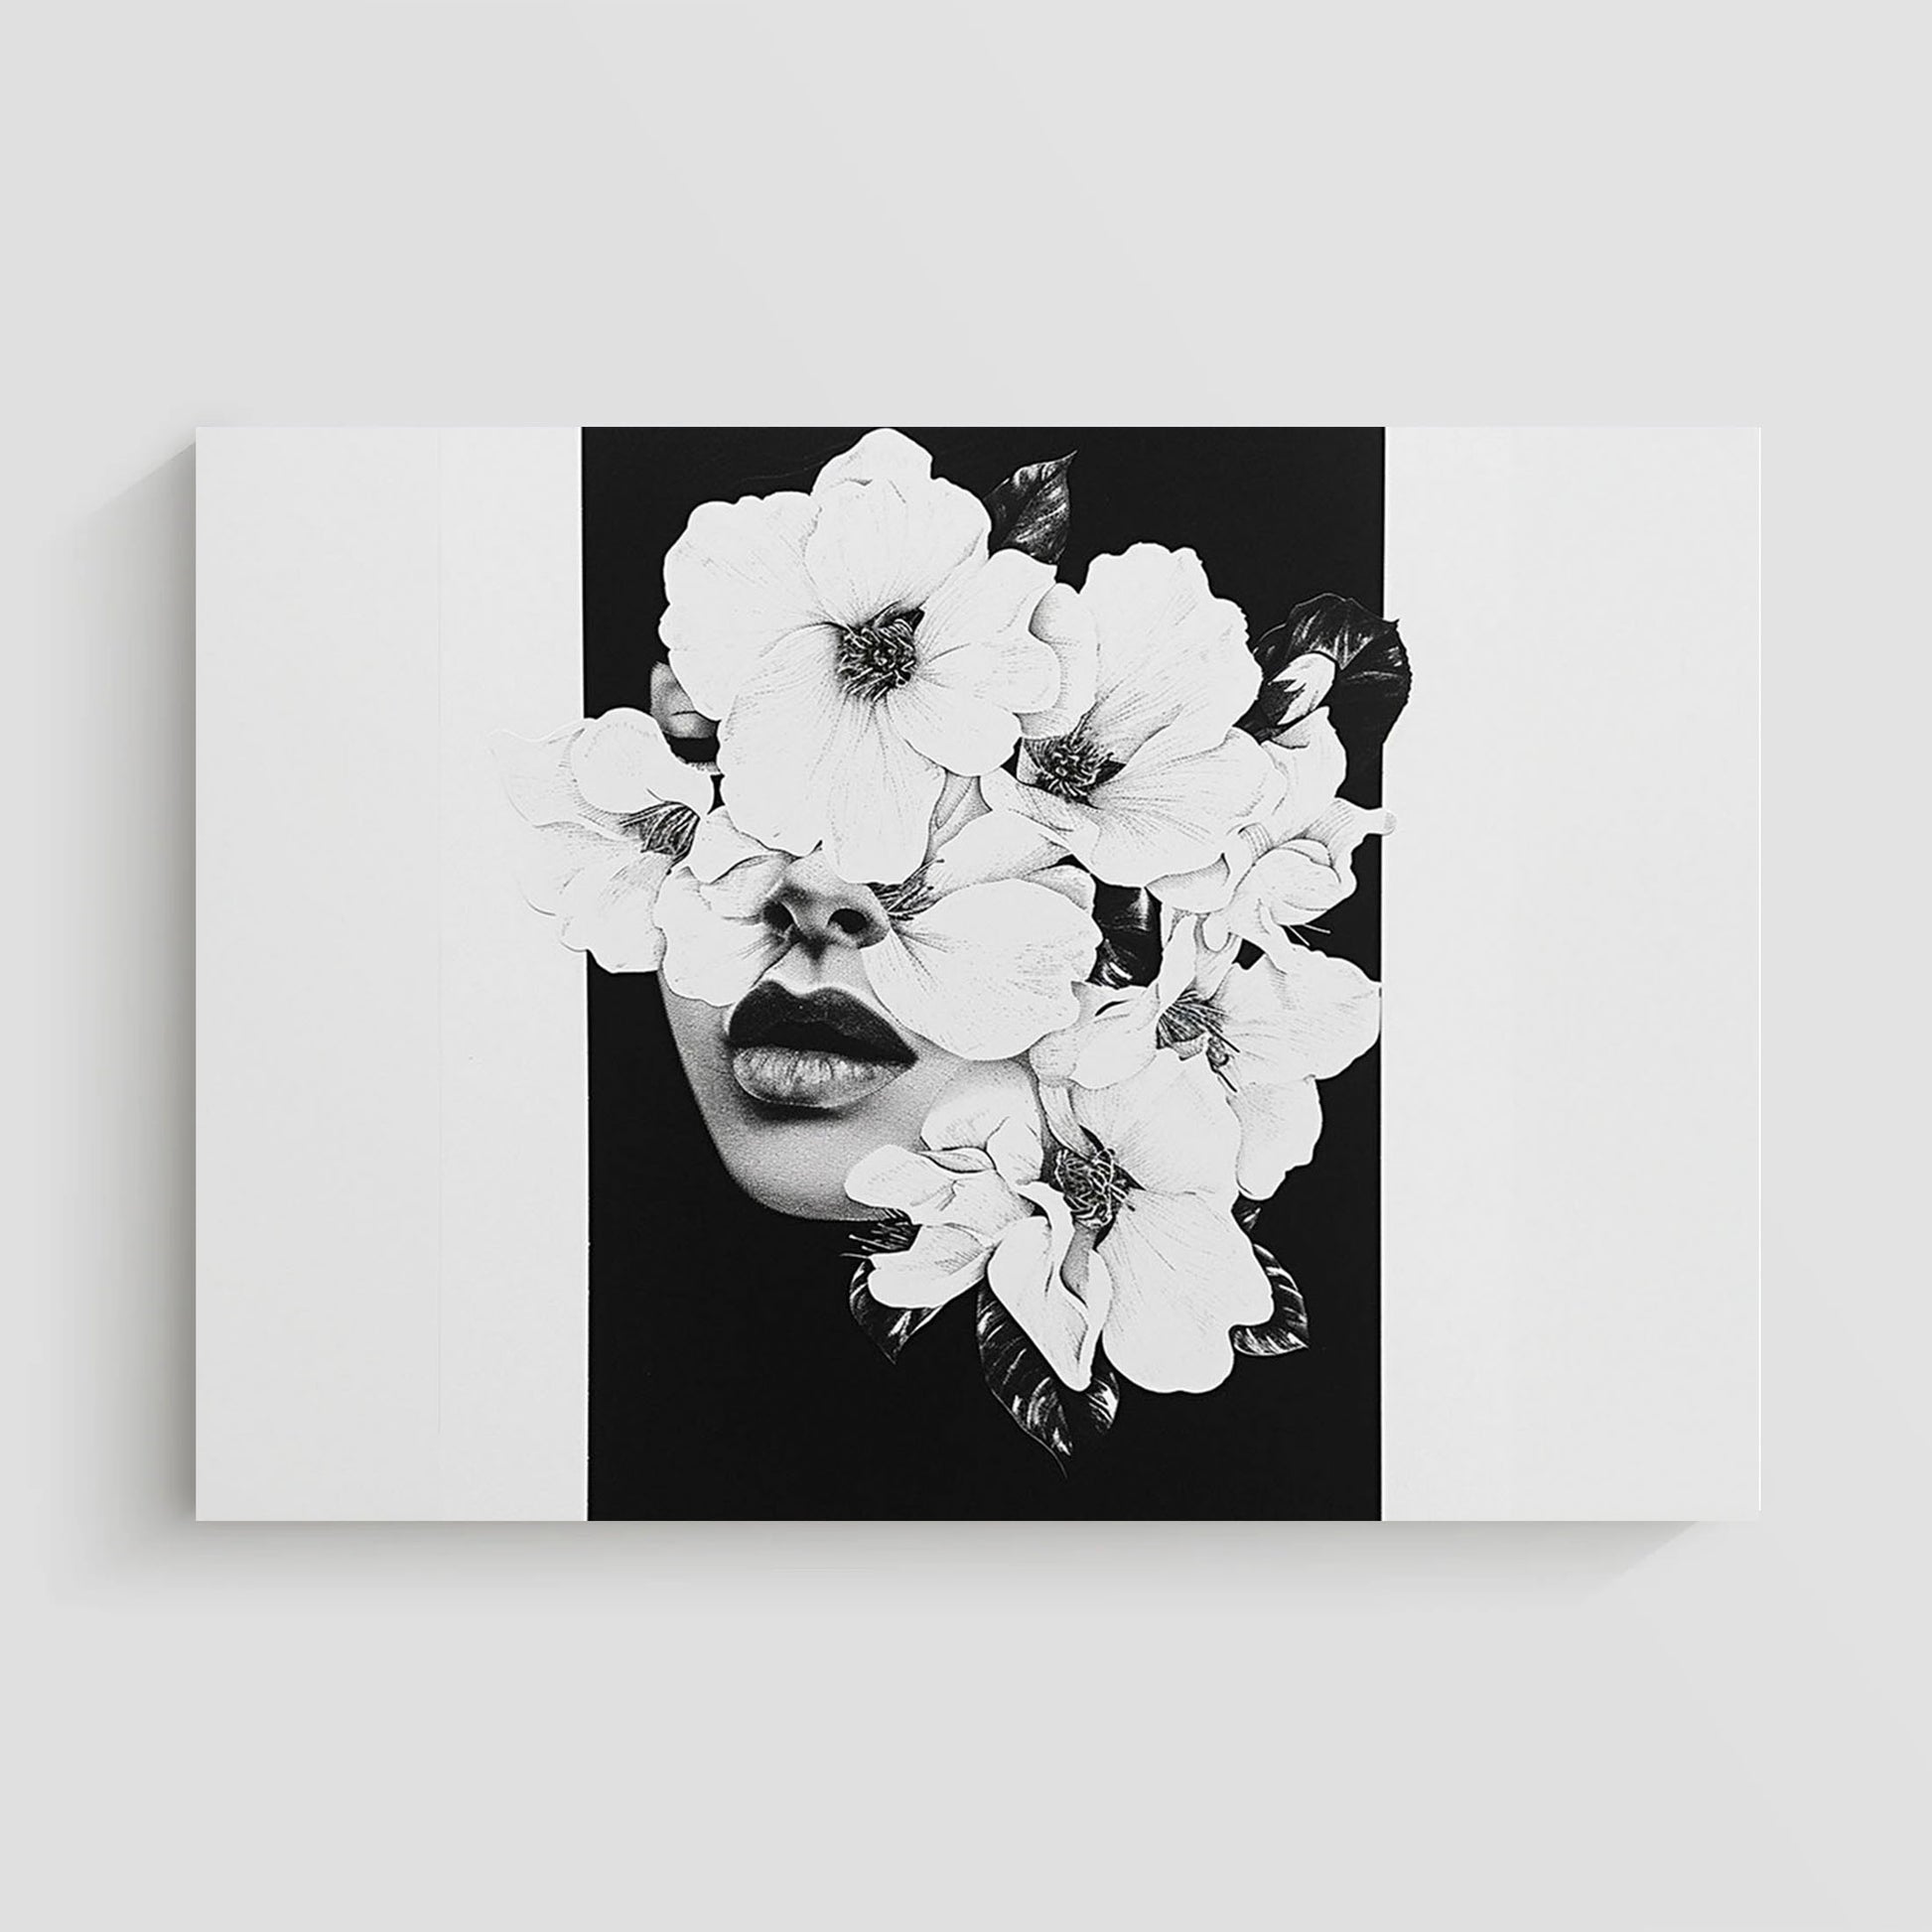 Ilustración en blanco y negro de un rostro humano fusionado con flores delicadas.